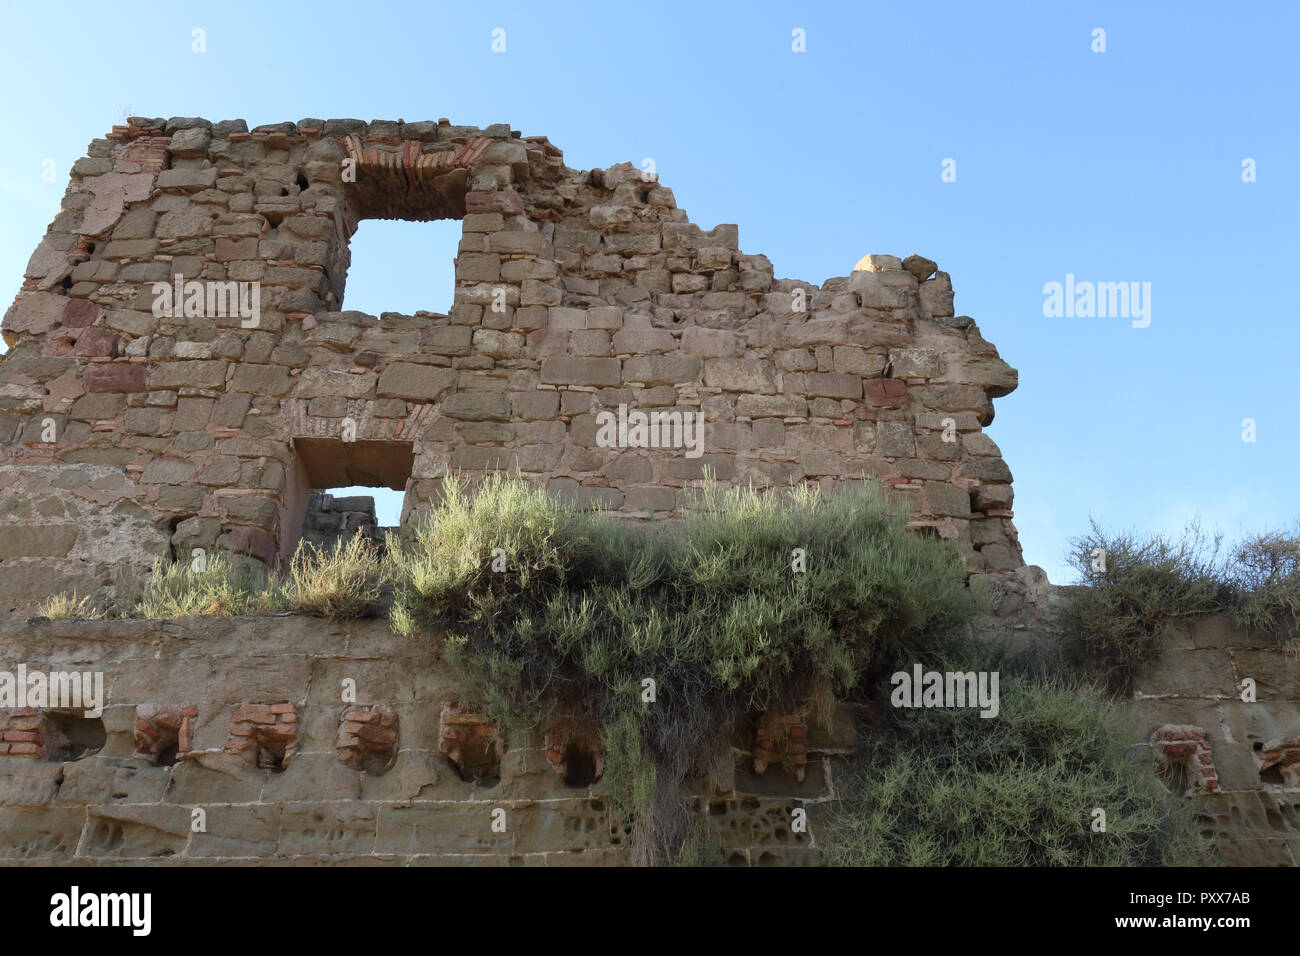 El amarillo erosionadas paredes del castillo de Montearagon abandonados en la región de Aragón, España, contra un cielo azul profundo durante un día de verano Foto de stock